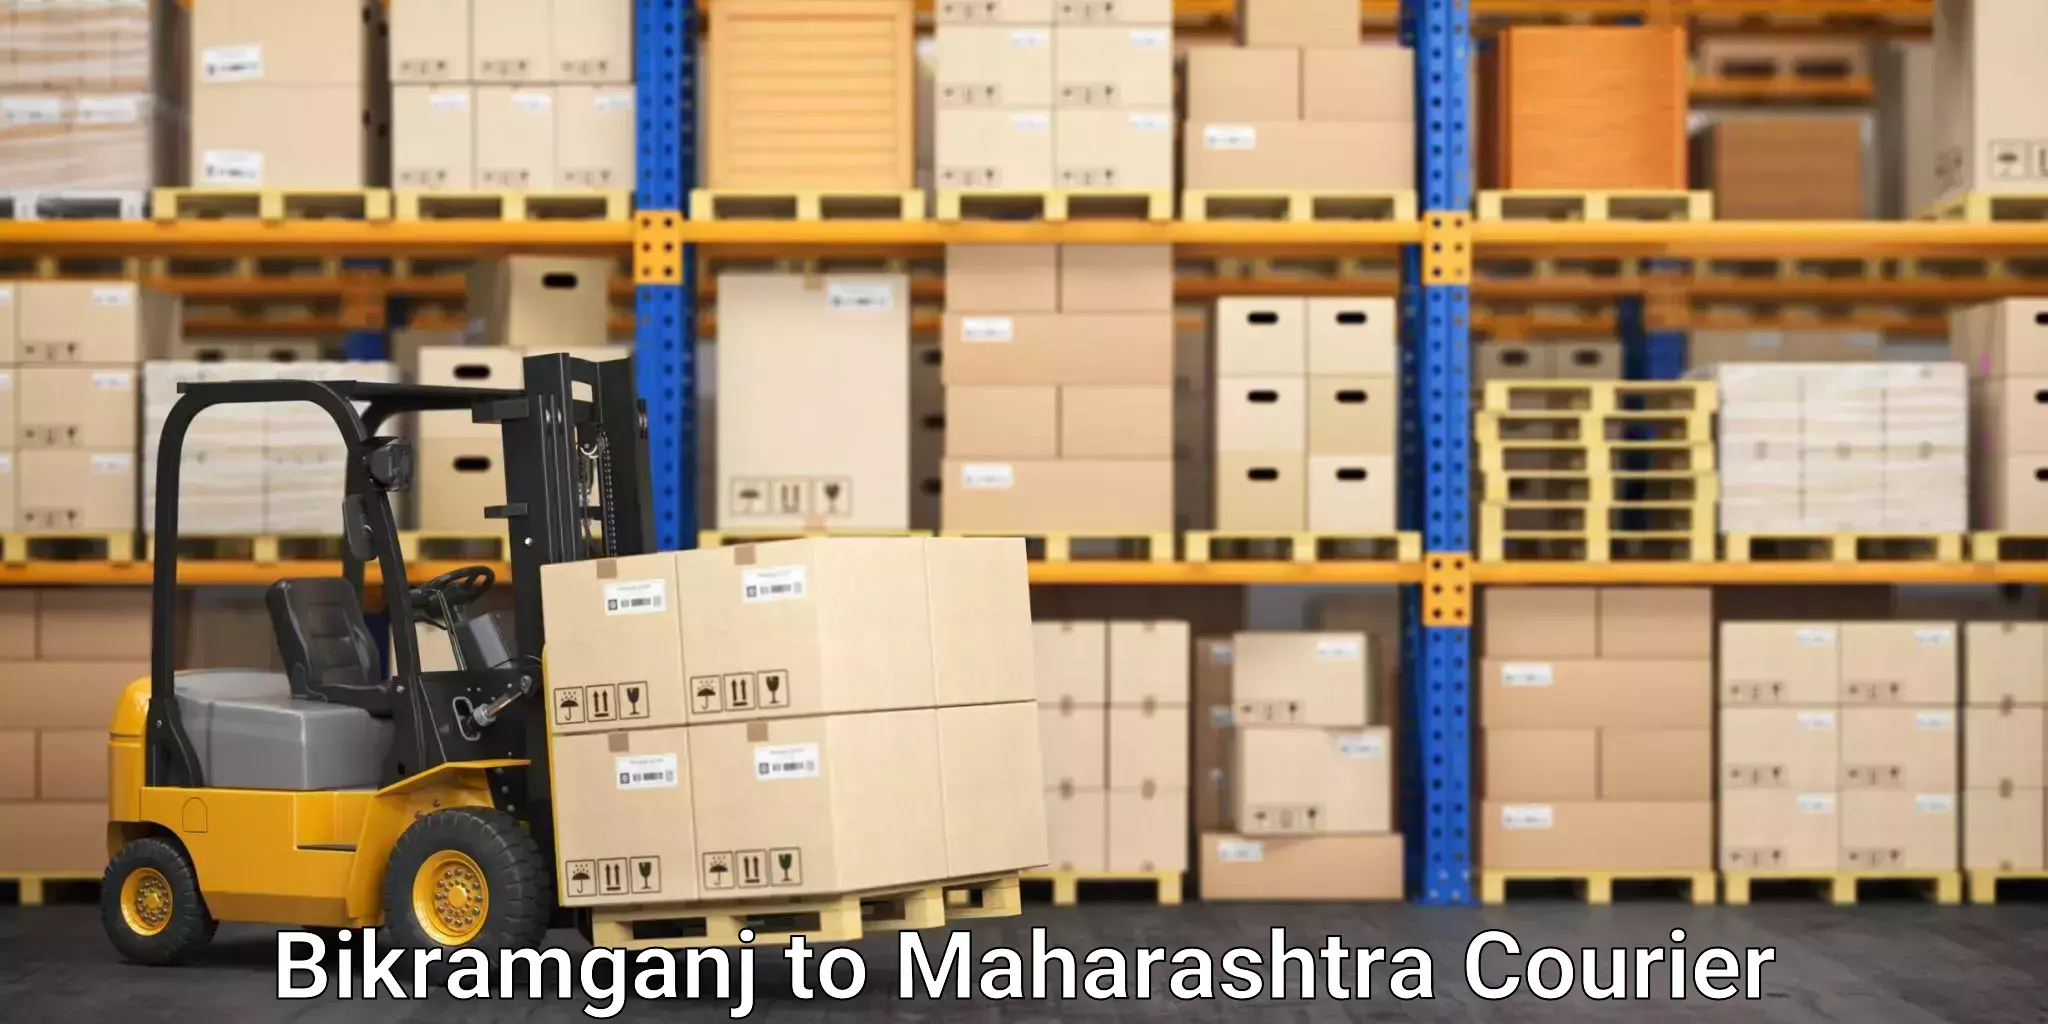 Furniture moving services Bikramganj to Maharashtra